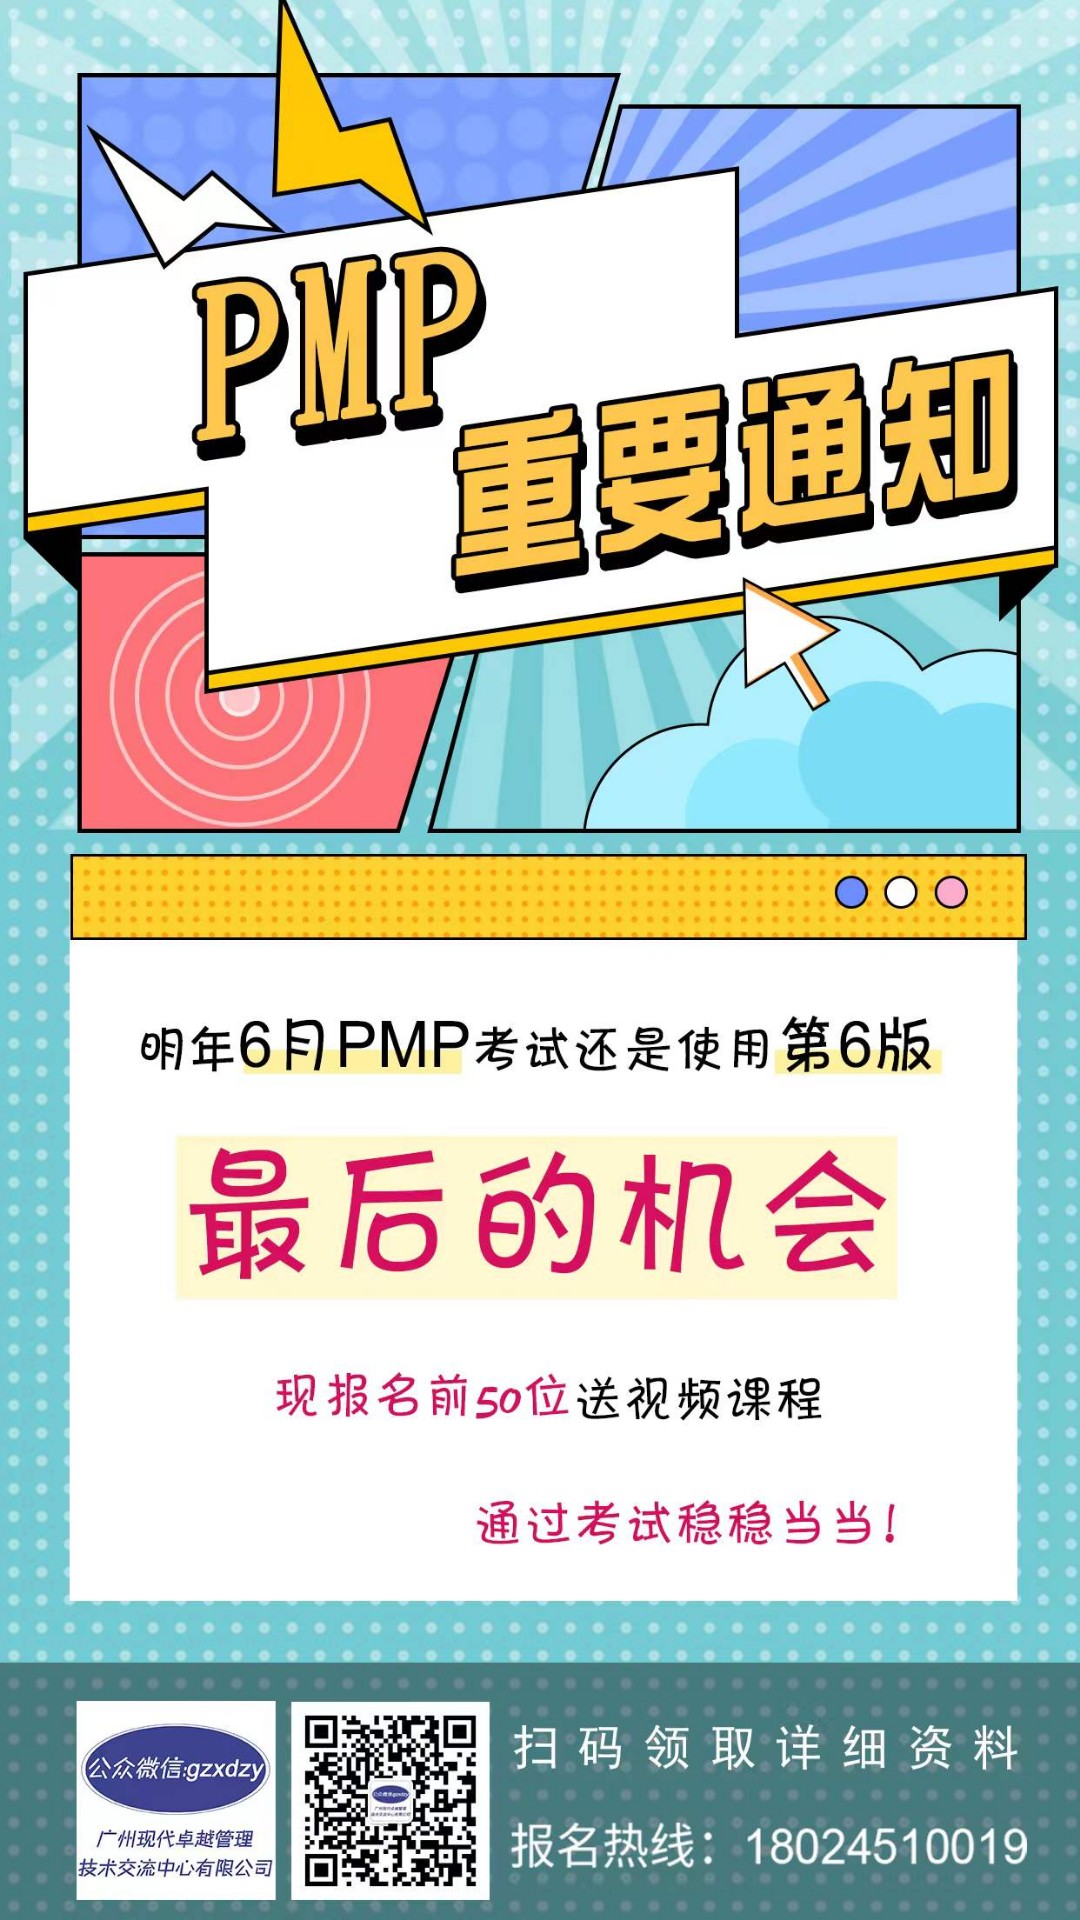 在广州现代卓越PMP培训老师的帮助下,我顺利通过PMP考试。